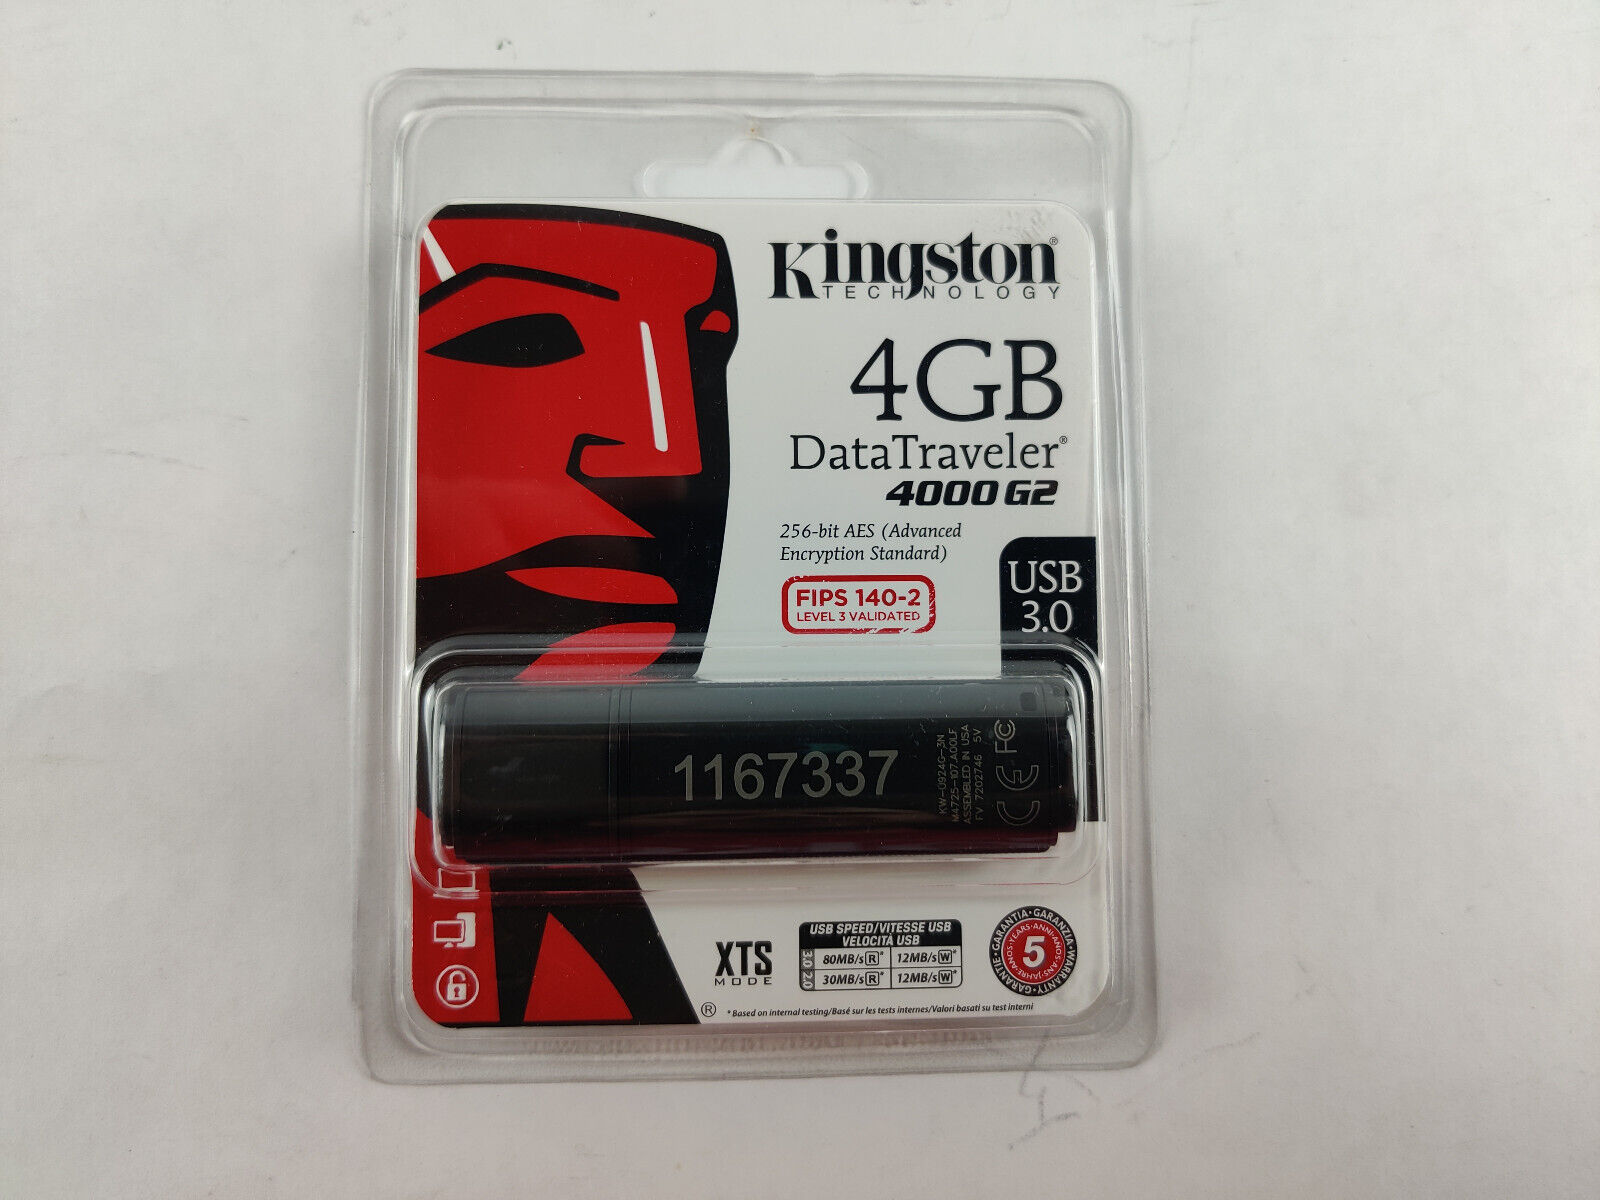 Kingston 4GB Data Traveler 4000 G2 USB 3.0 NEW *SEALED*